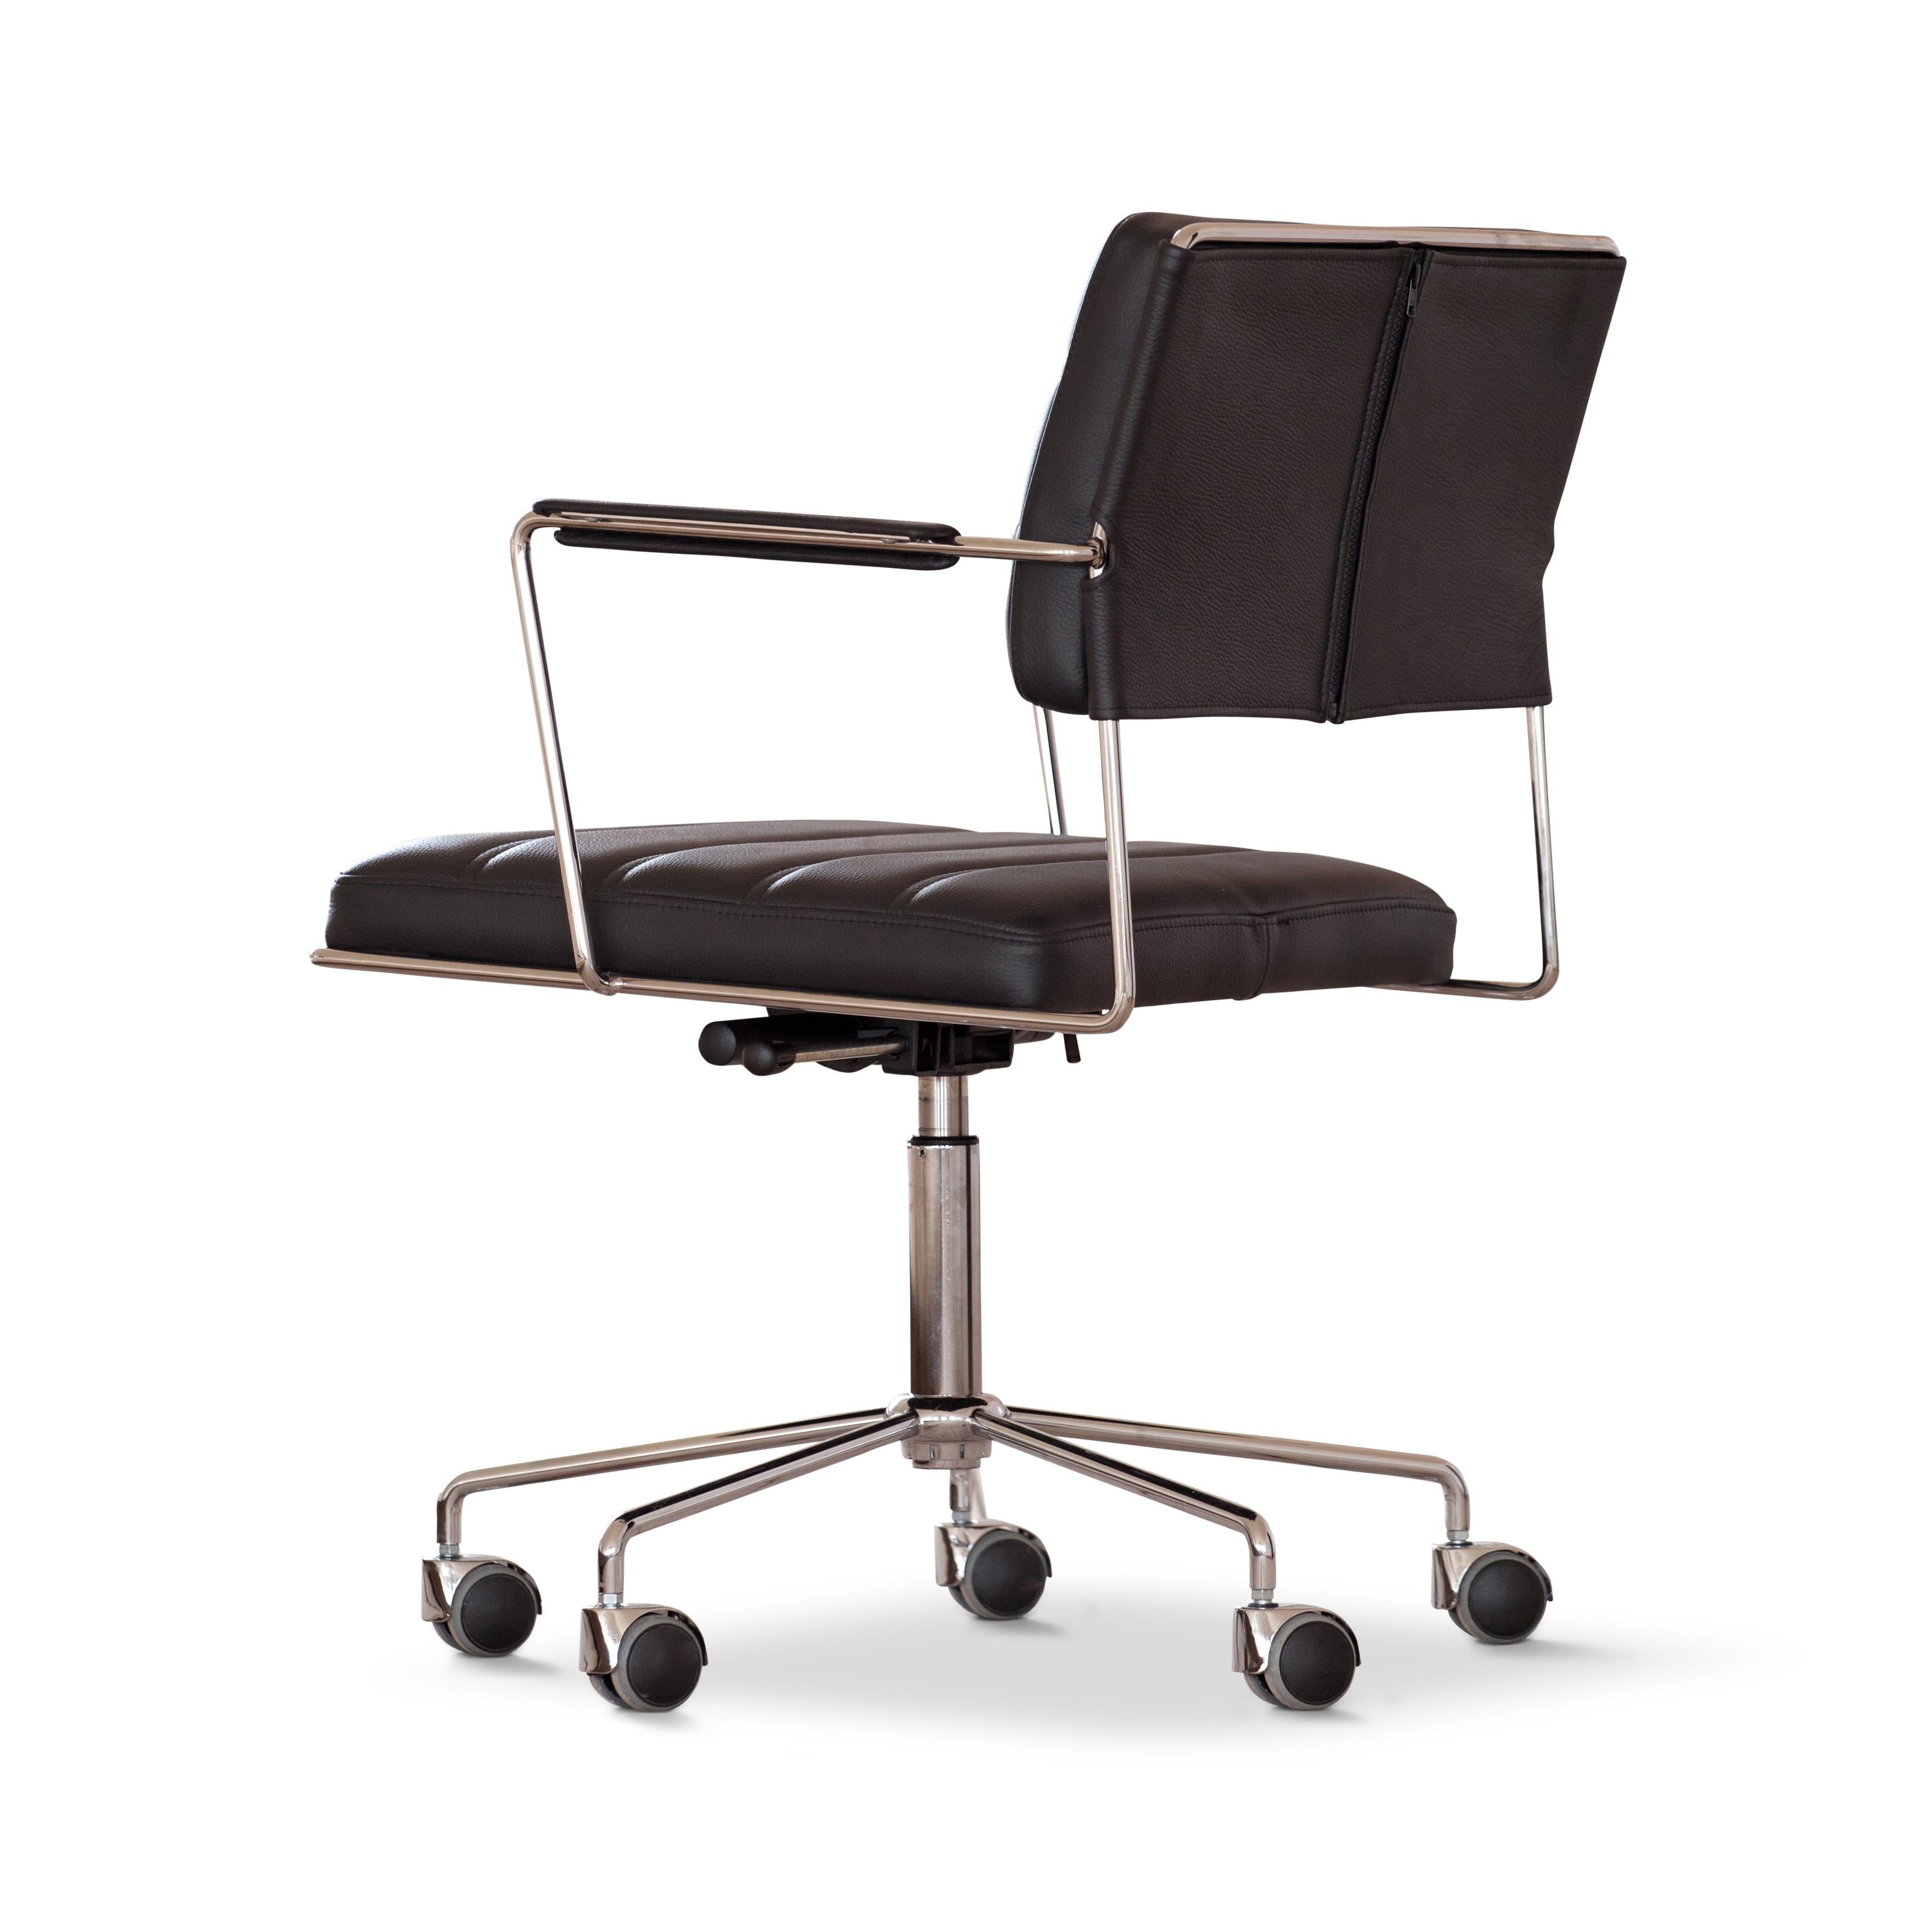 Der tme Stuhl ist ein dynamischer und bequemer Konferenzstuhl, der 2012 von Henrik Tengler entworfen wurde. Der Stuhl ist absichtlich so gestaltet, dass er nicht den aktuellen Trends folgt. Stattdessen ähnelt seine Ästhetik dem kosmopolitischen